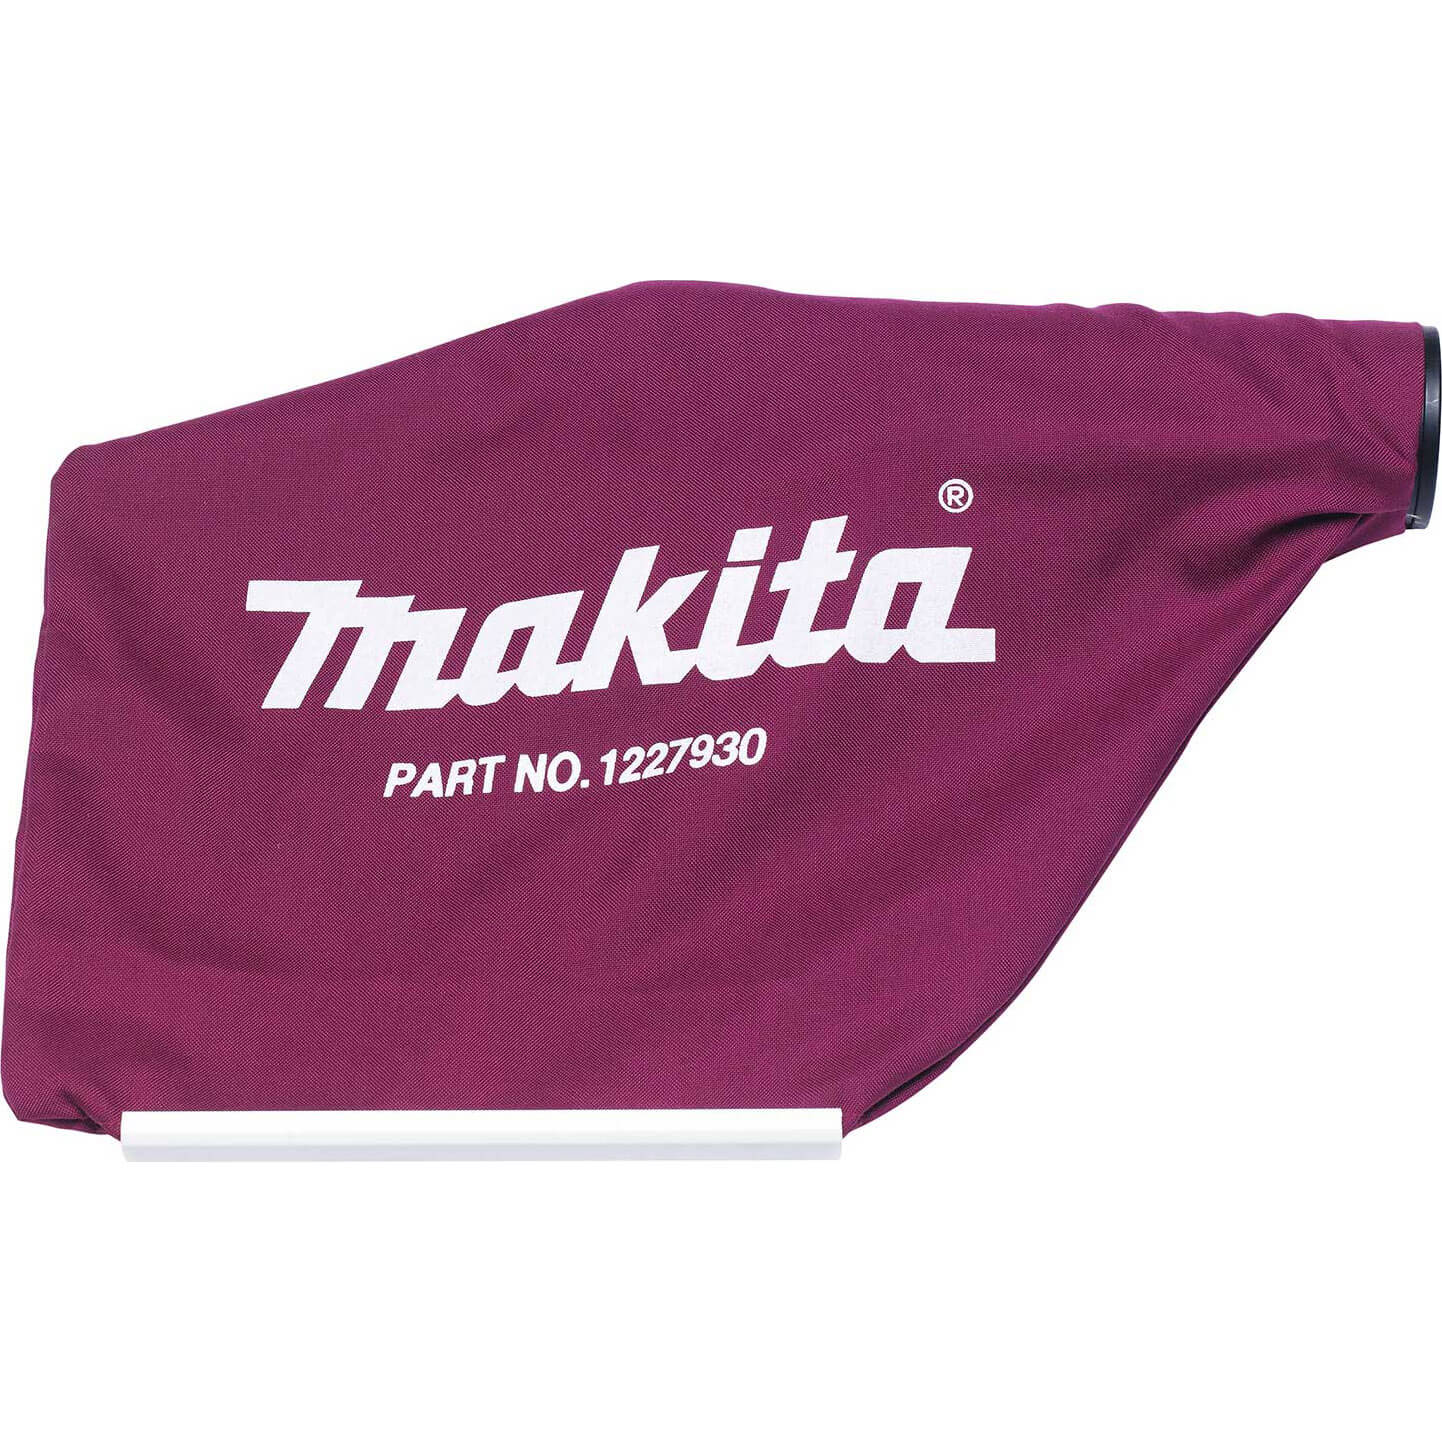 Photo of Makita Dust Bag For Dkp180 Cordless Planer